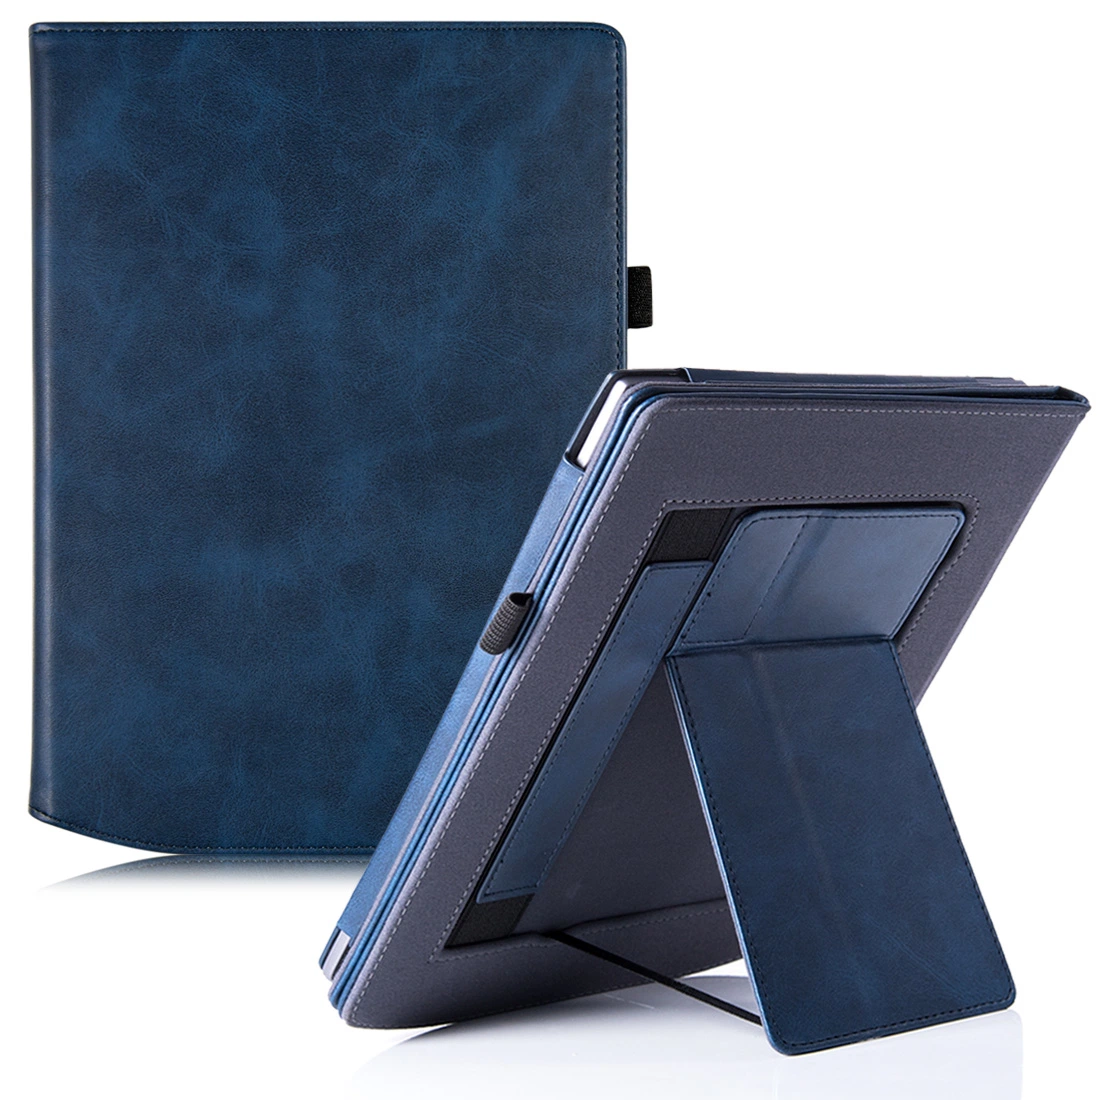 Suporte duplo para Pocketbook Inkpad X PU luva protetora de couro de suspensão automática da tampa